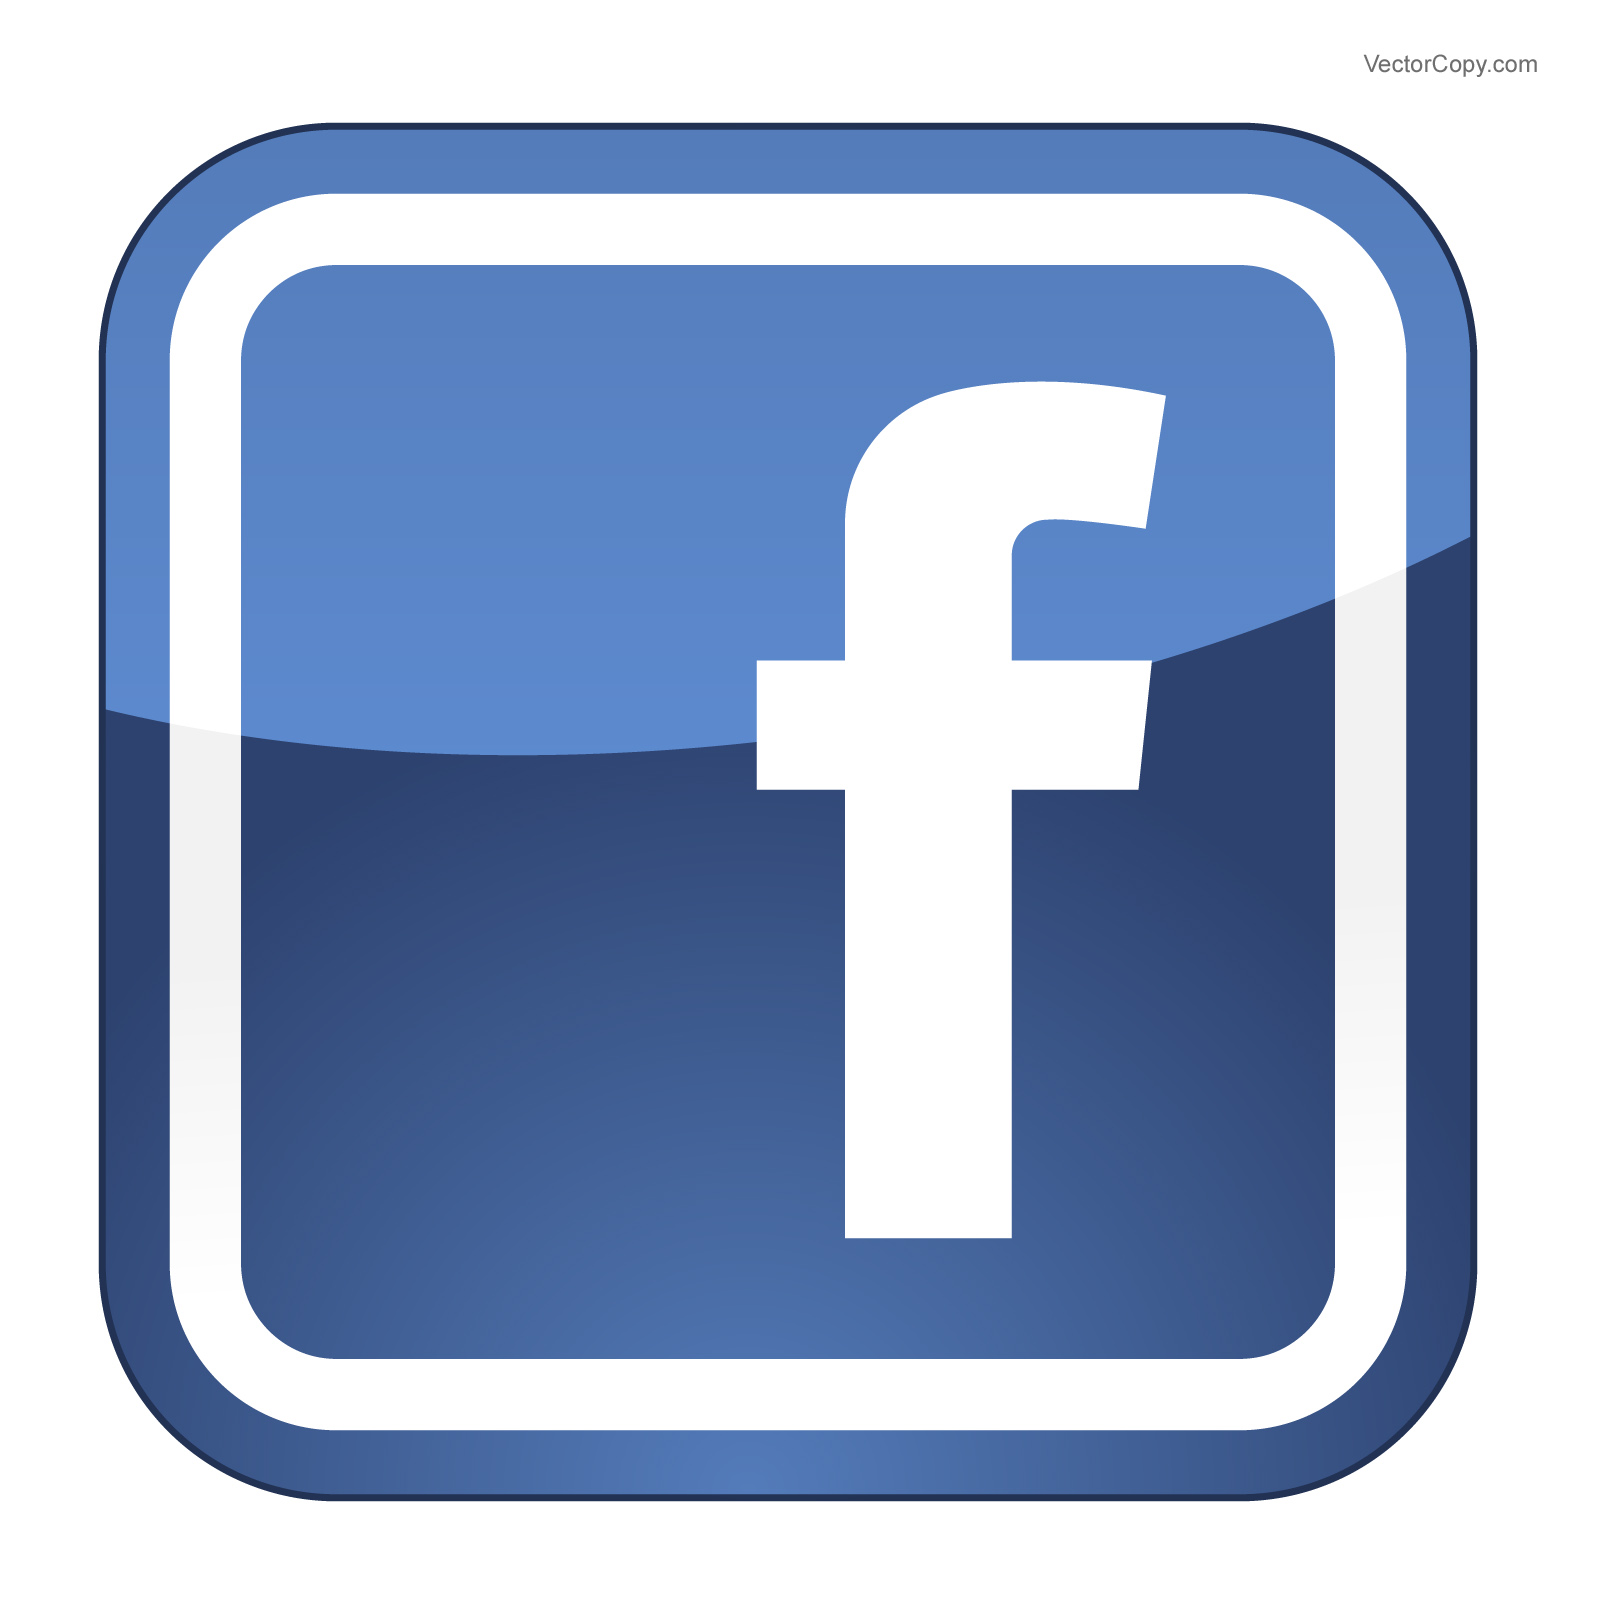 13 Facebook Logo Vector EPS Images - Facebook, Facebook Logo Vector